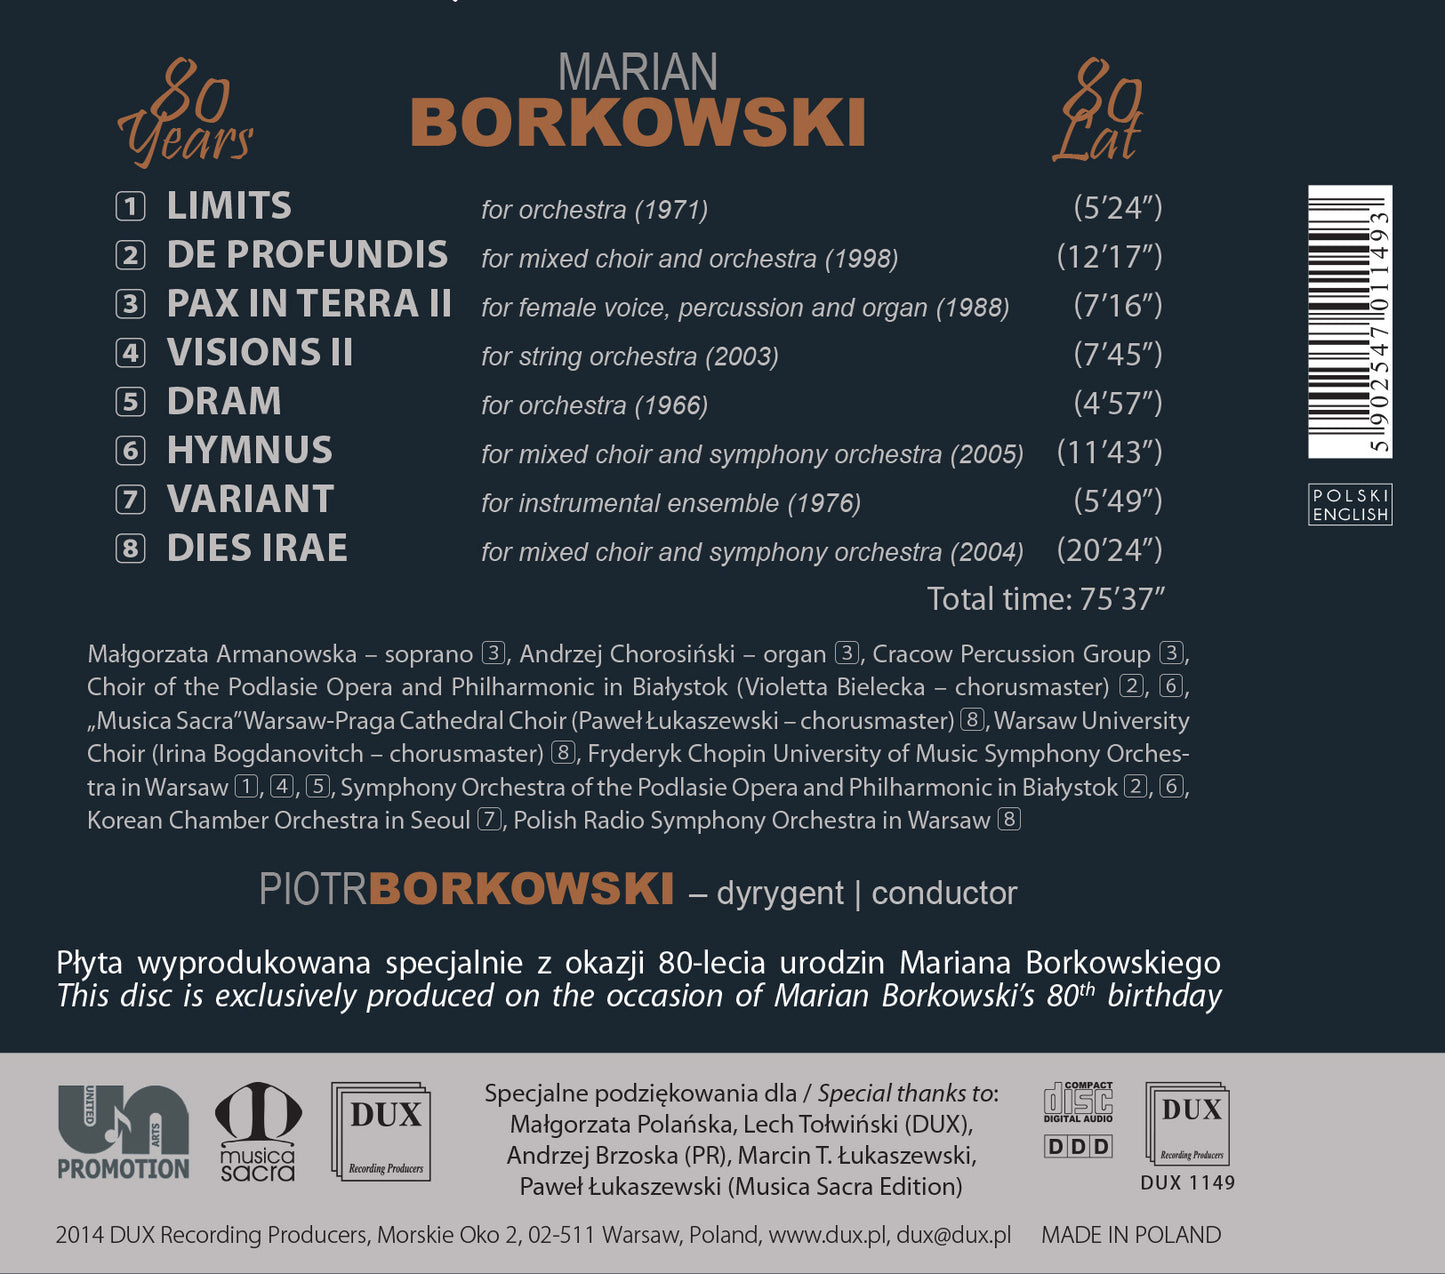 Piotr Borkowski conducts Marian Borkowski